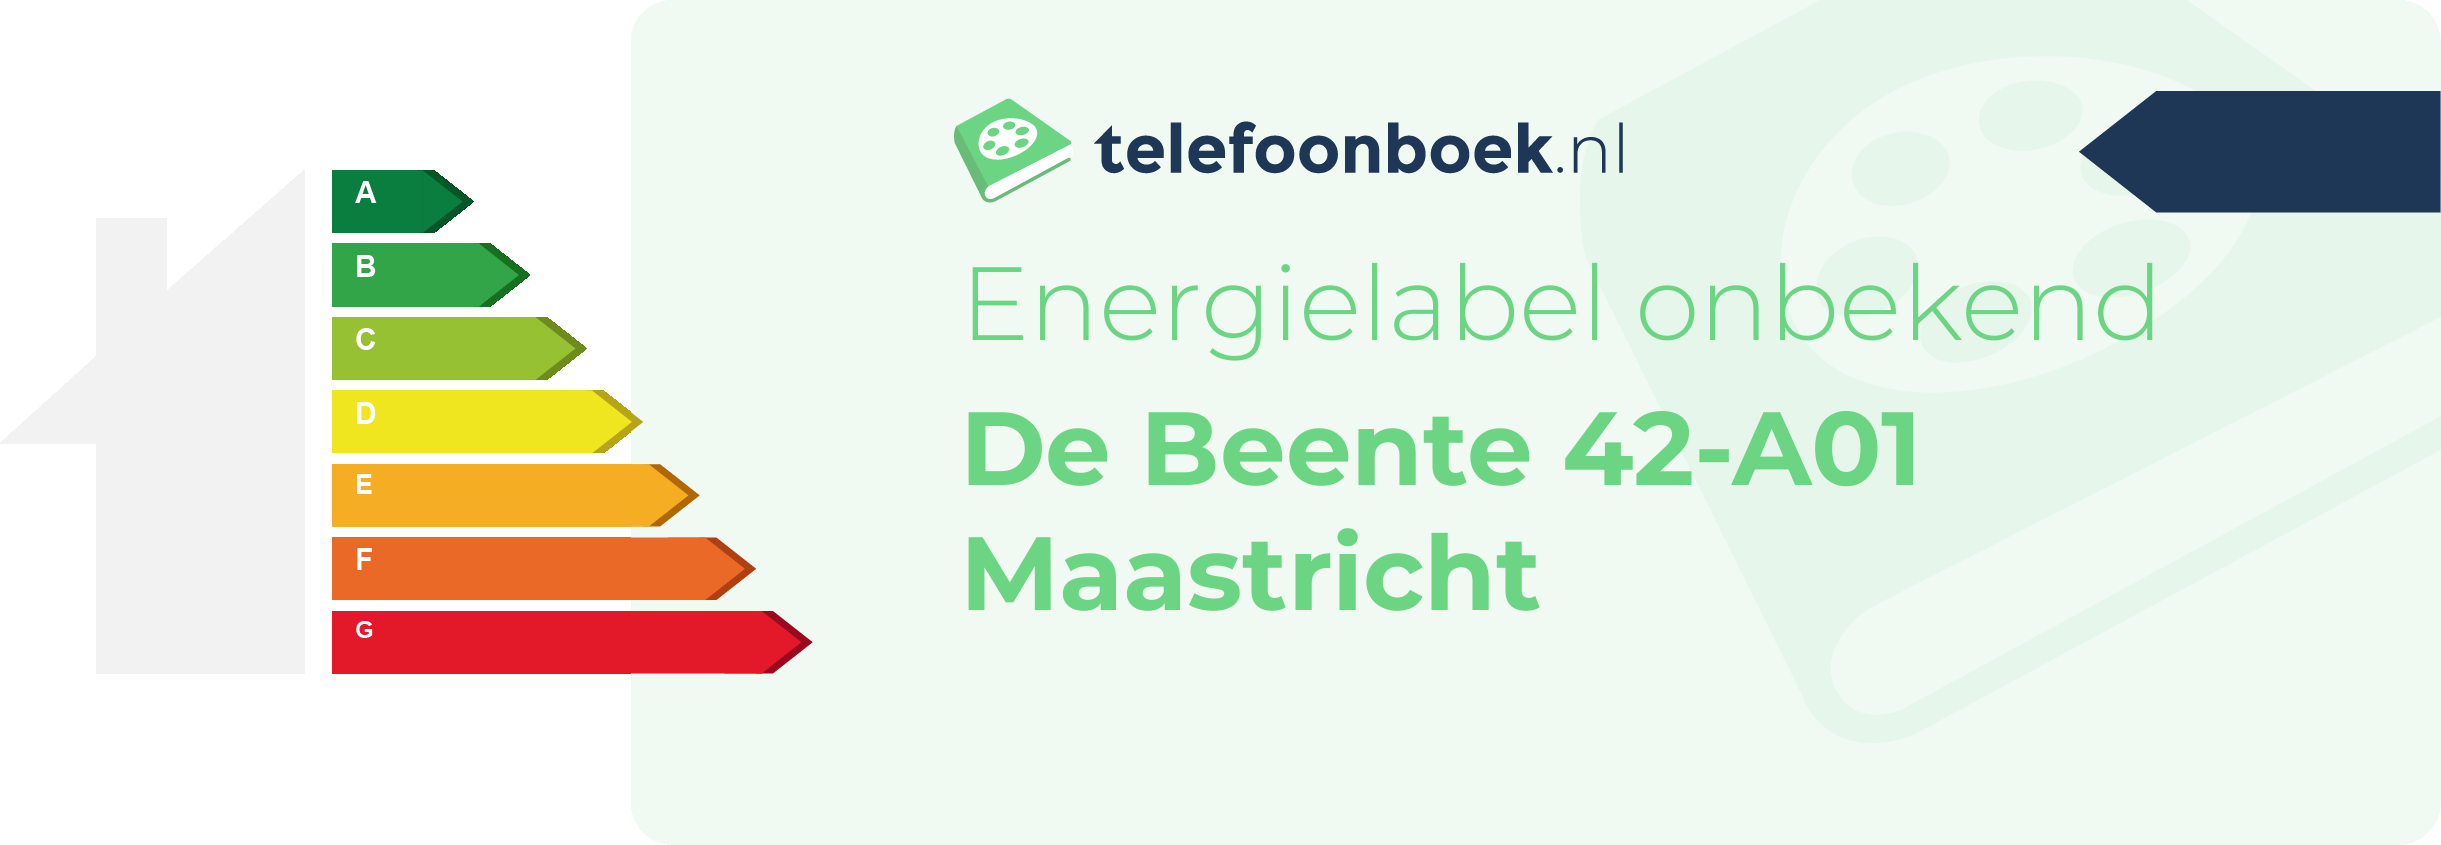 Energielabel De Beente 42-A01 Maastricht